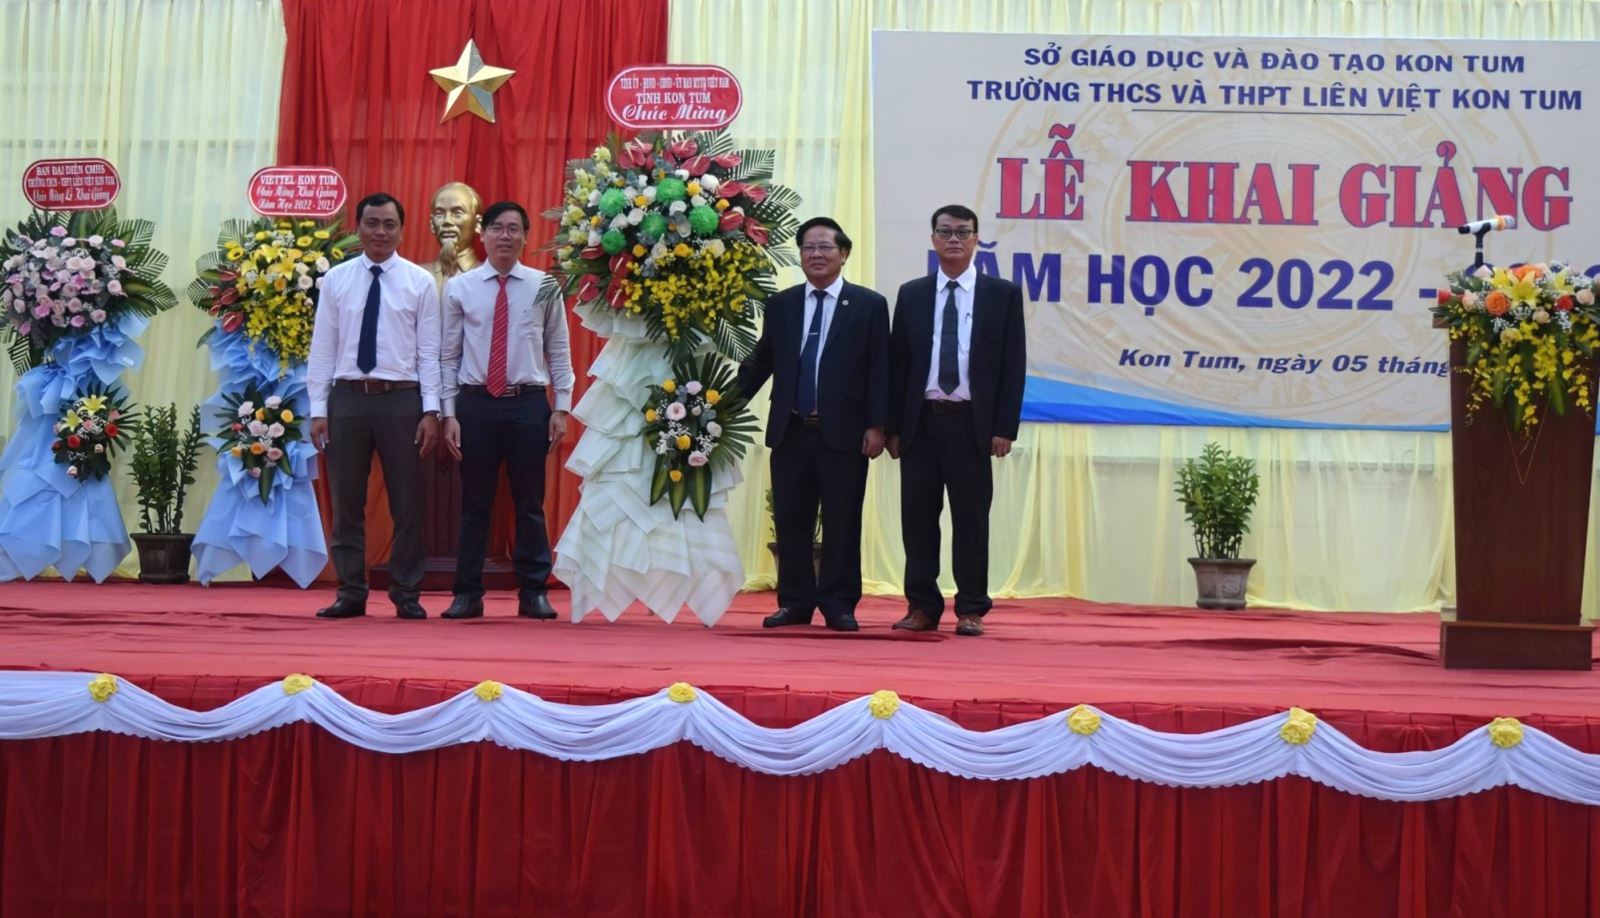 Chủ tịch UBND tỉnh dự Lễ khai giảng Trường THCS và THPT Liên Việt Kon Tum